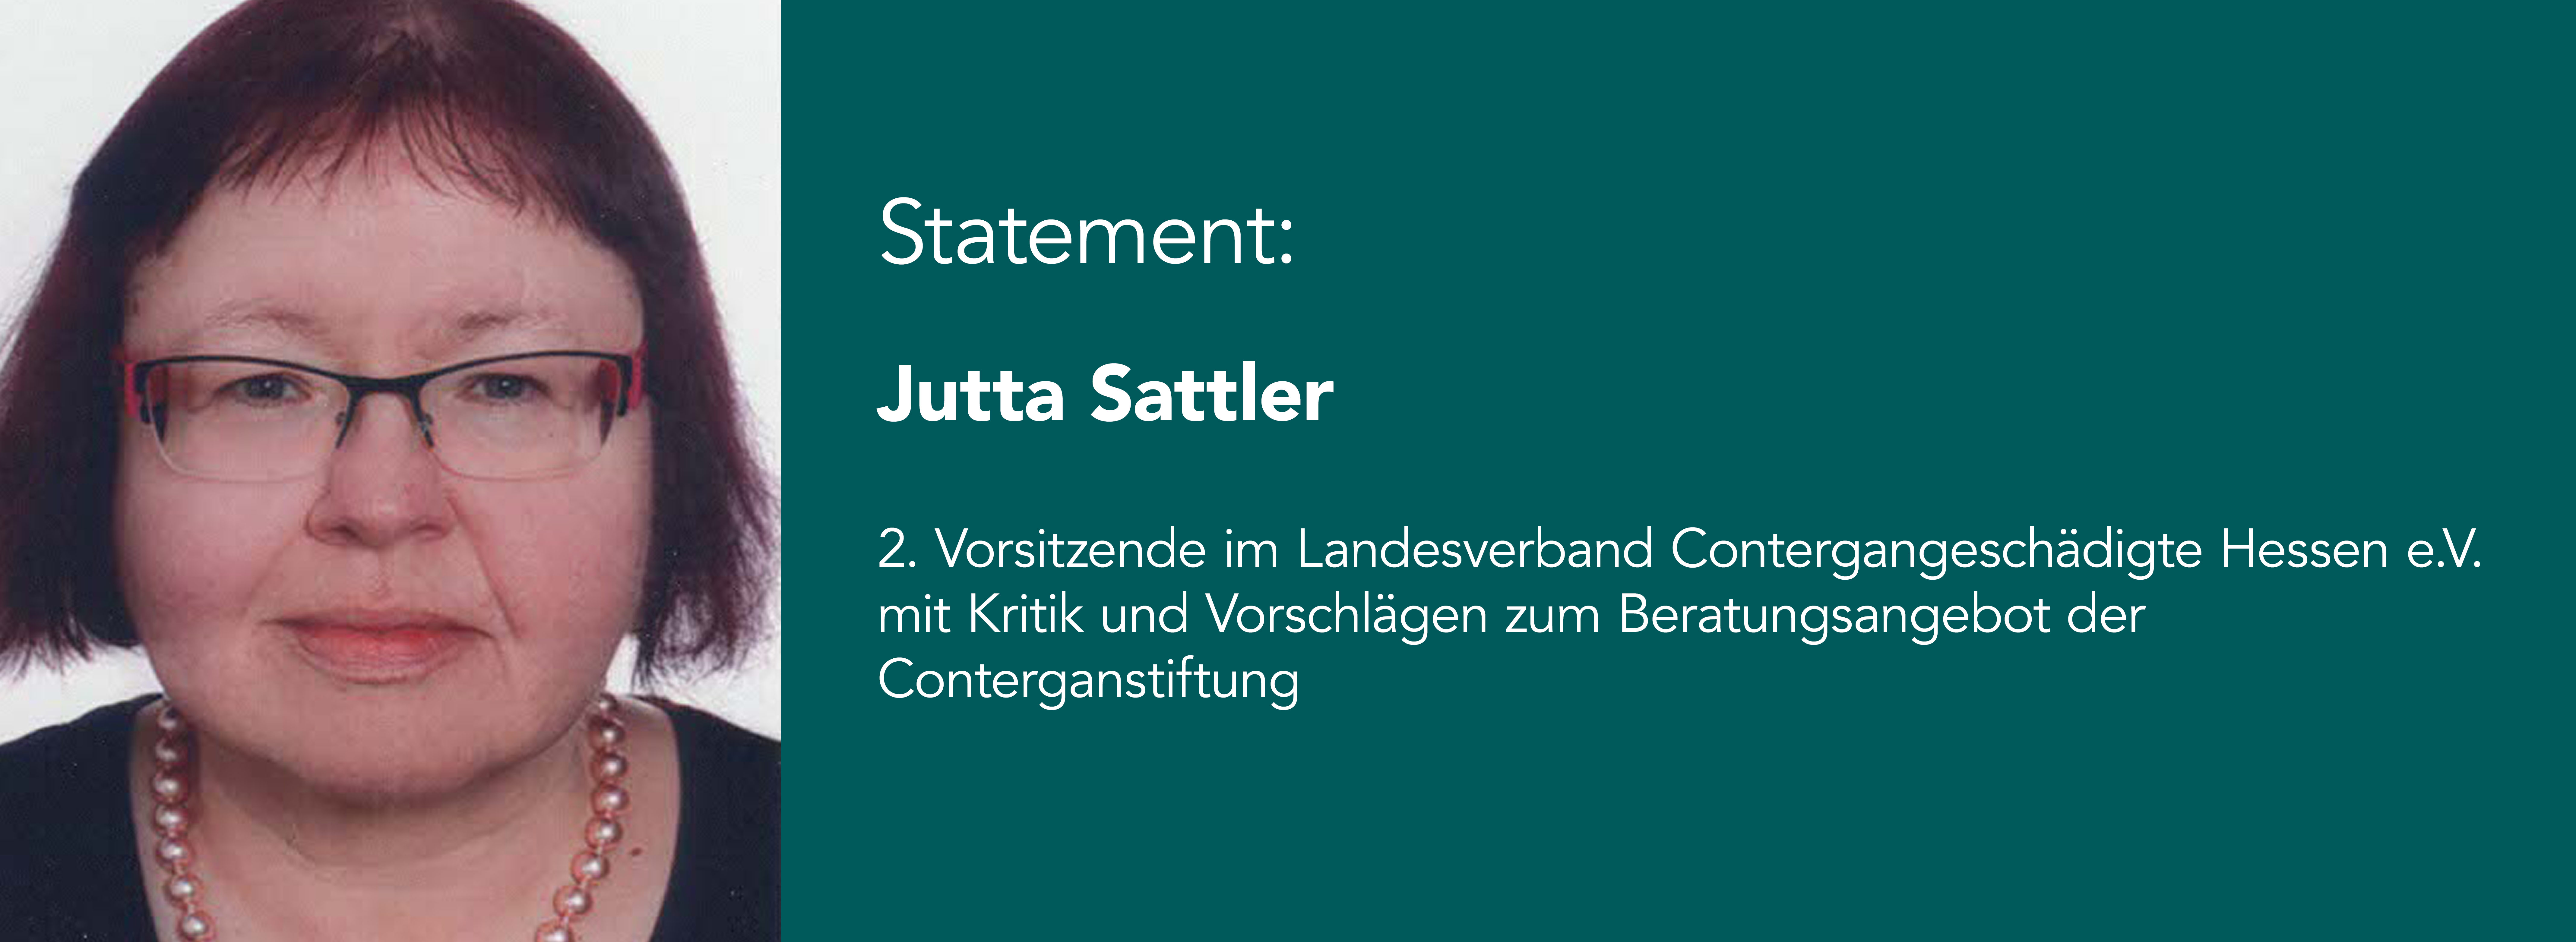 Das Bild zeigt Jutta Sattler, zweite Vorsitzende im Landesverband Contergangeschädigte Hessen e.V.